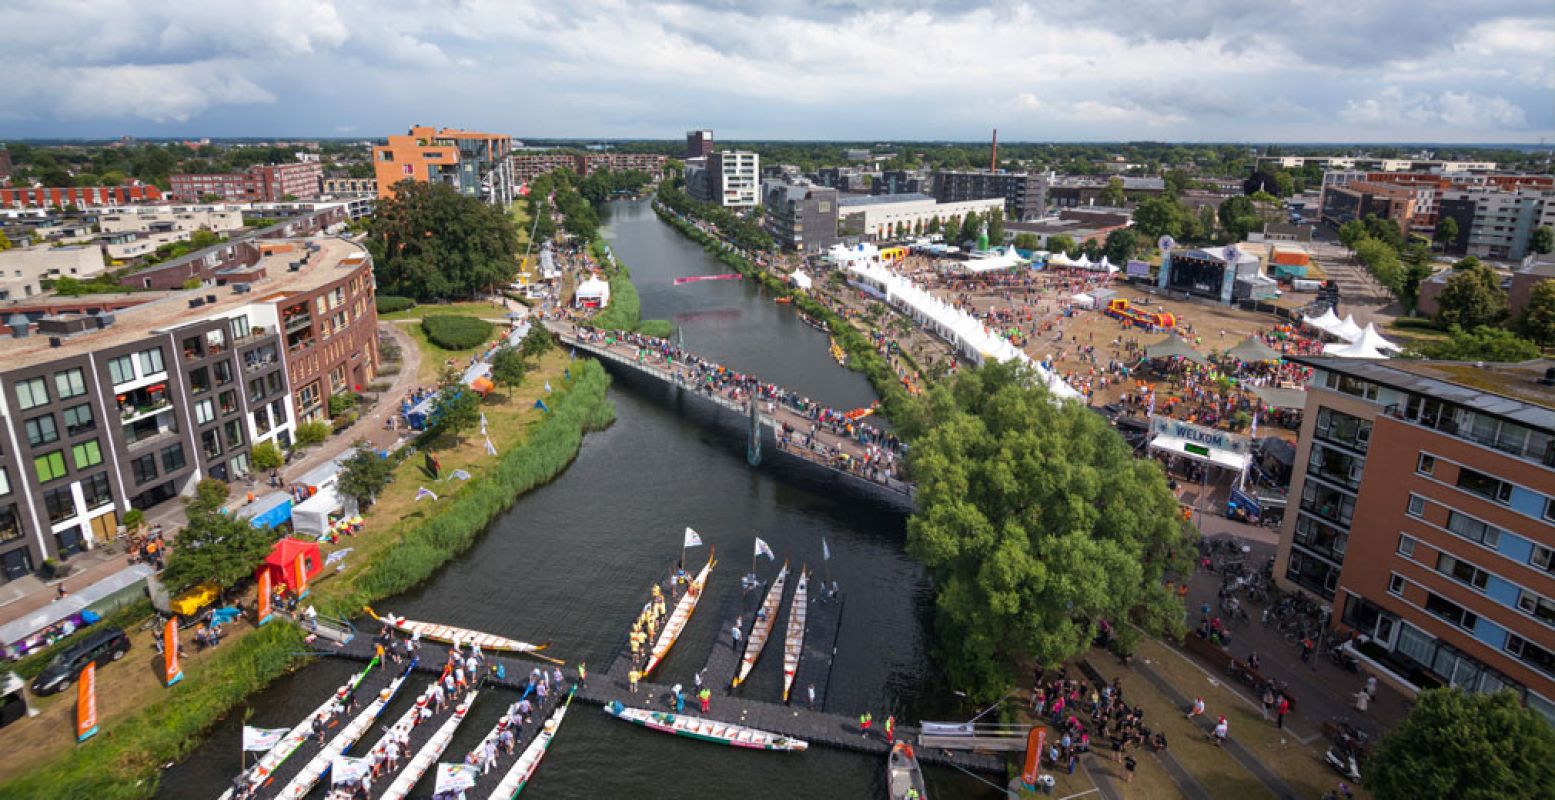 Overzichtsfoto Drakenbootfestival Apeldoorn 2014. Fotograaf: Yoran Wever